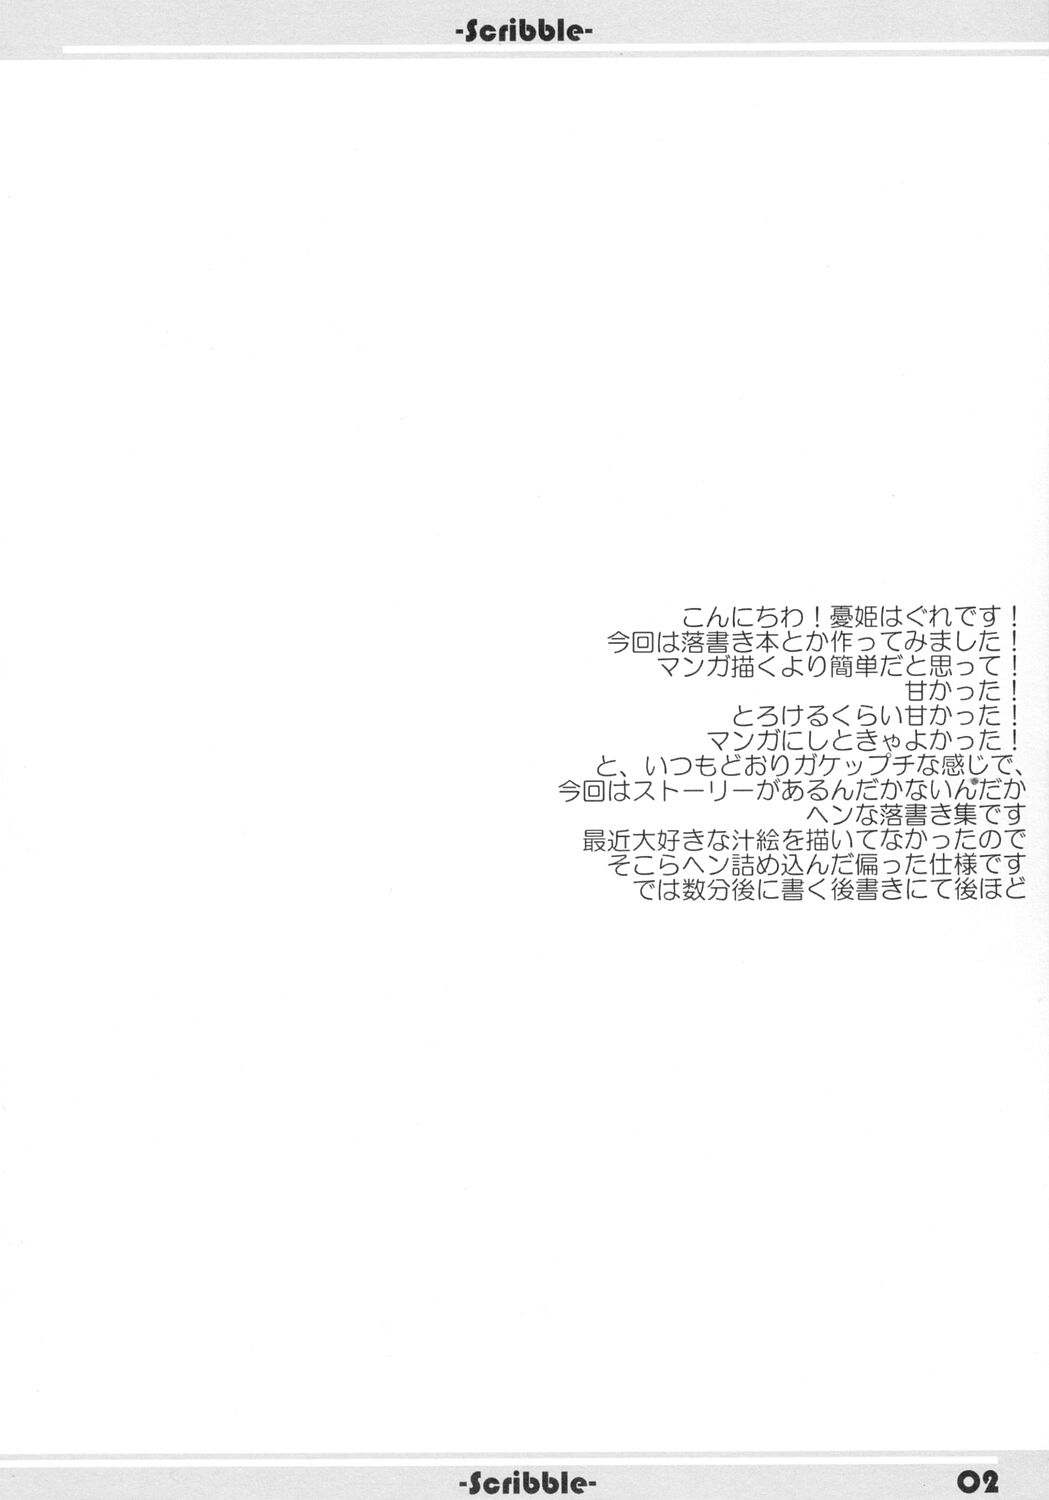 (CR34)[WIREFRAME (無私天使 + 憂姫はぐれ + 美沙央)] Scribble (宇宙のステルヴィア + ガドガード)